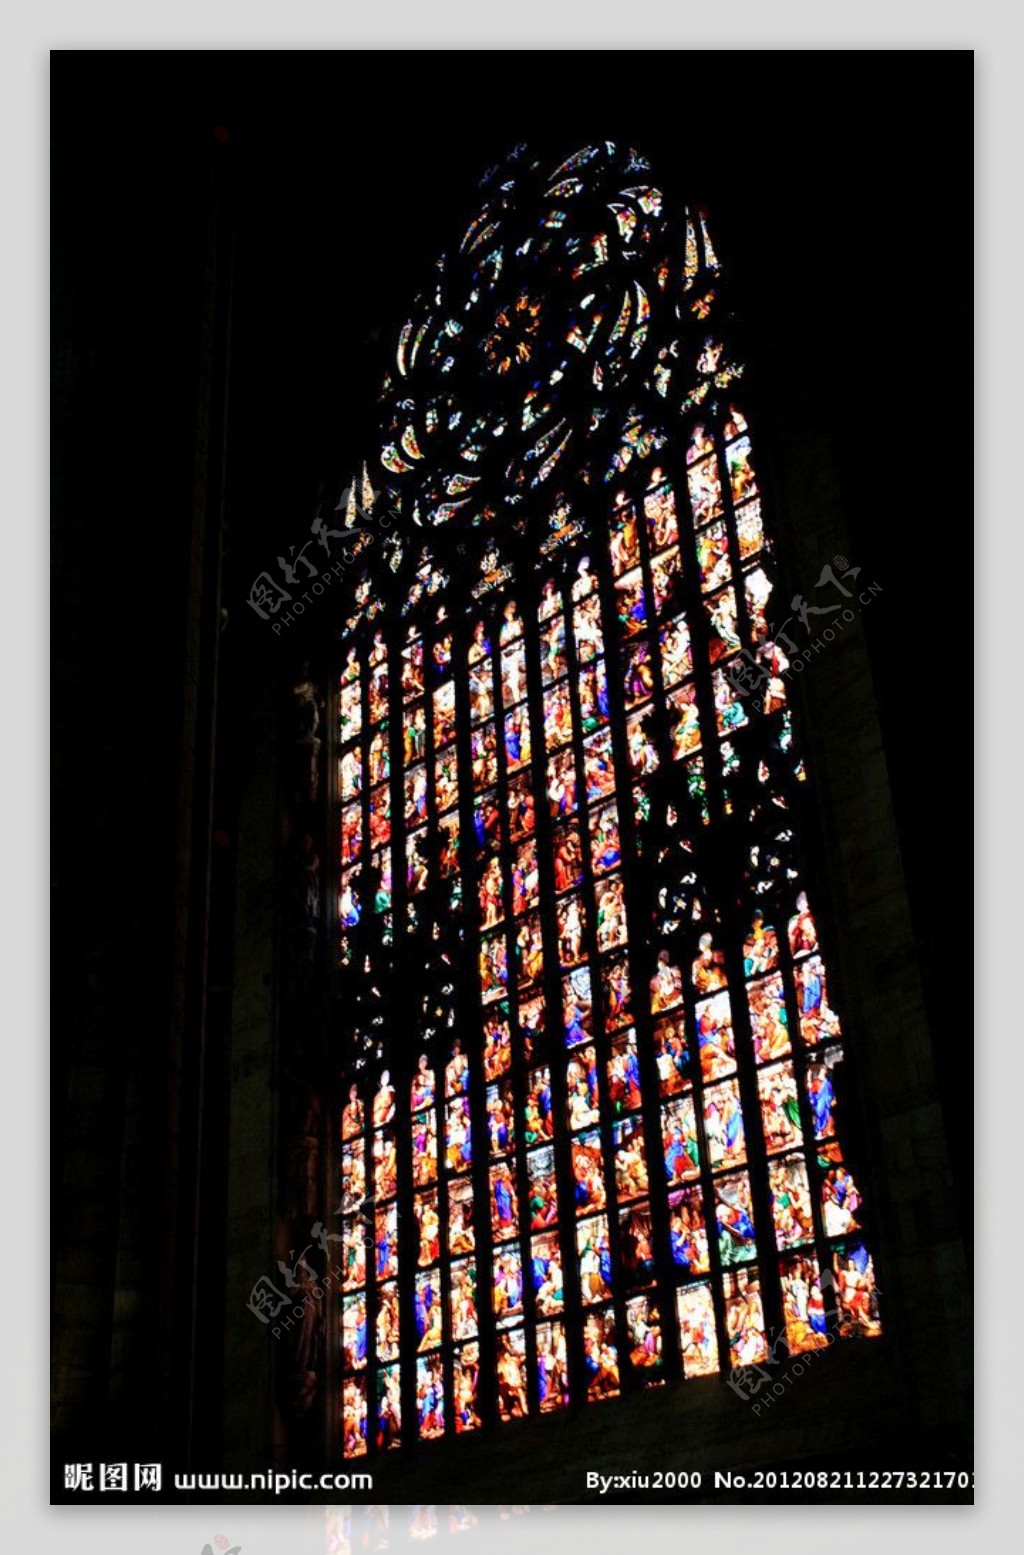 米兰大教堂玻璃窗图片